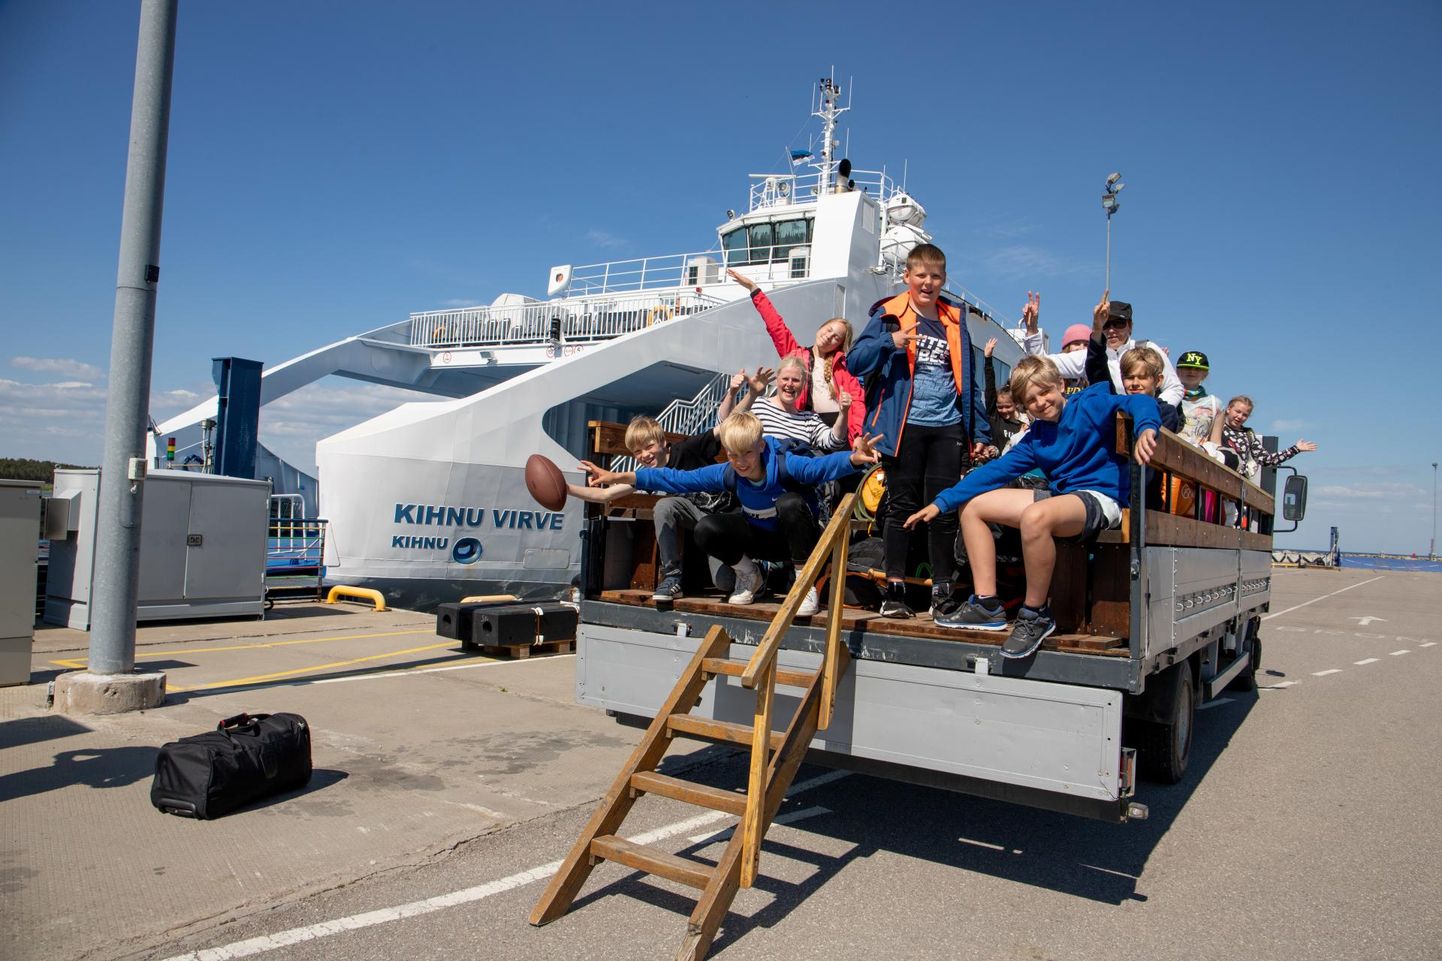 Mandrilt Kihnu ekskursioonile tulnud kooliõpilastele pakub elamuse sõitmine kastiautos, mille kasti kõrguselt on huvitav ainukordset saart uudistada ning sadamasse laevale jõuda.